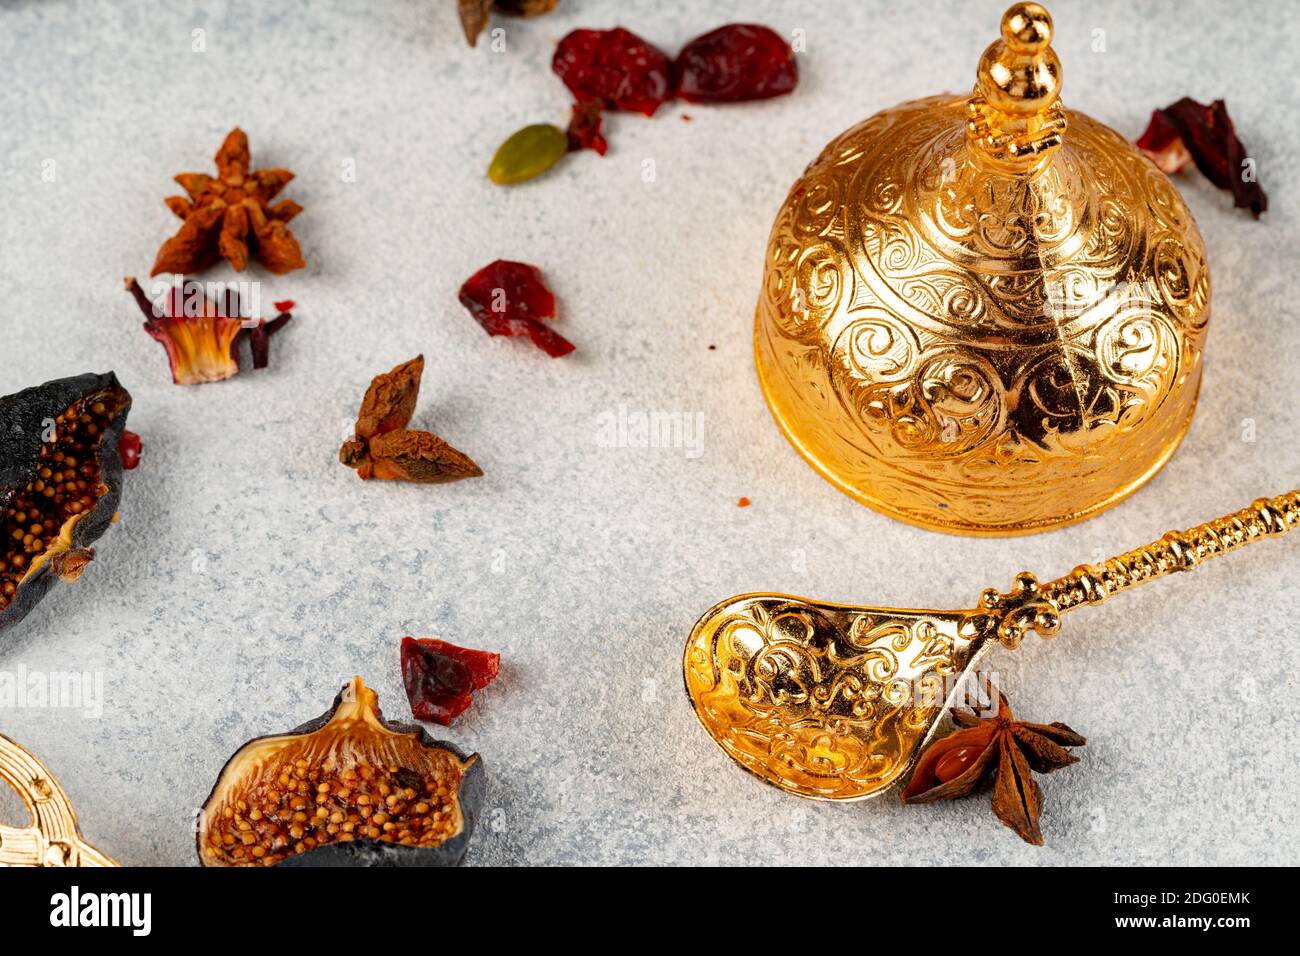 Arabisches Geschirr aus Metall und Trockenfrüchte auf dem Tisch  Stockfotografie - Alamy